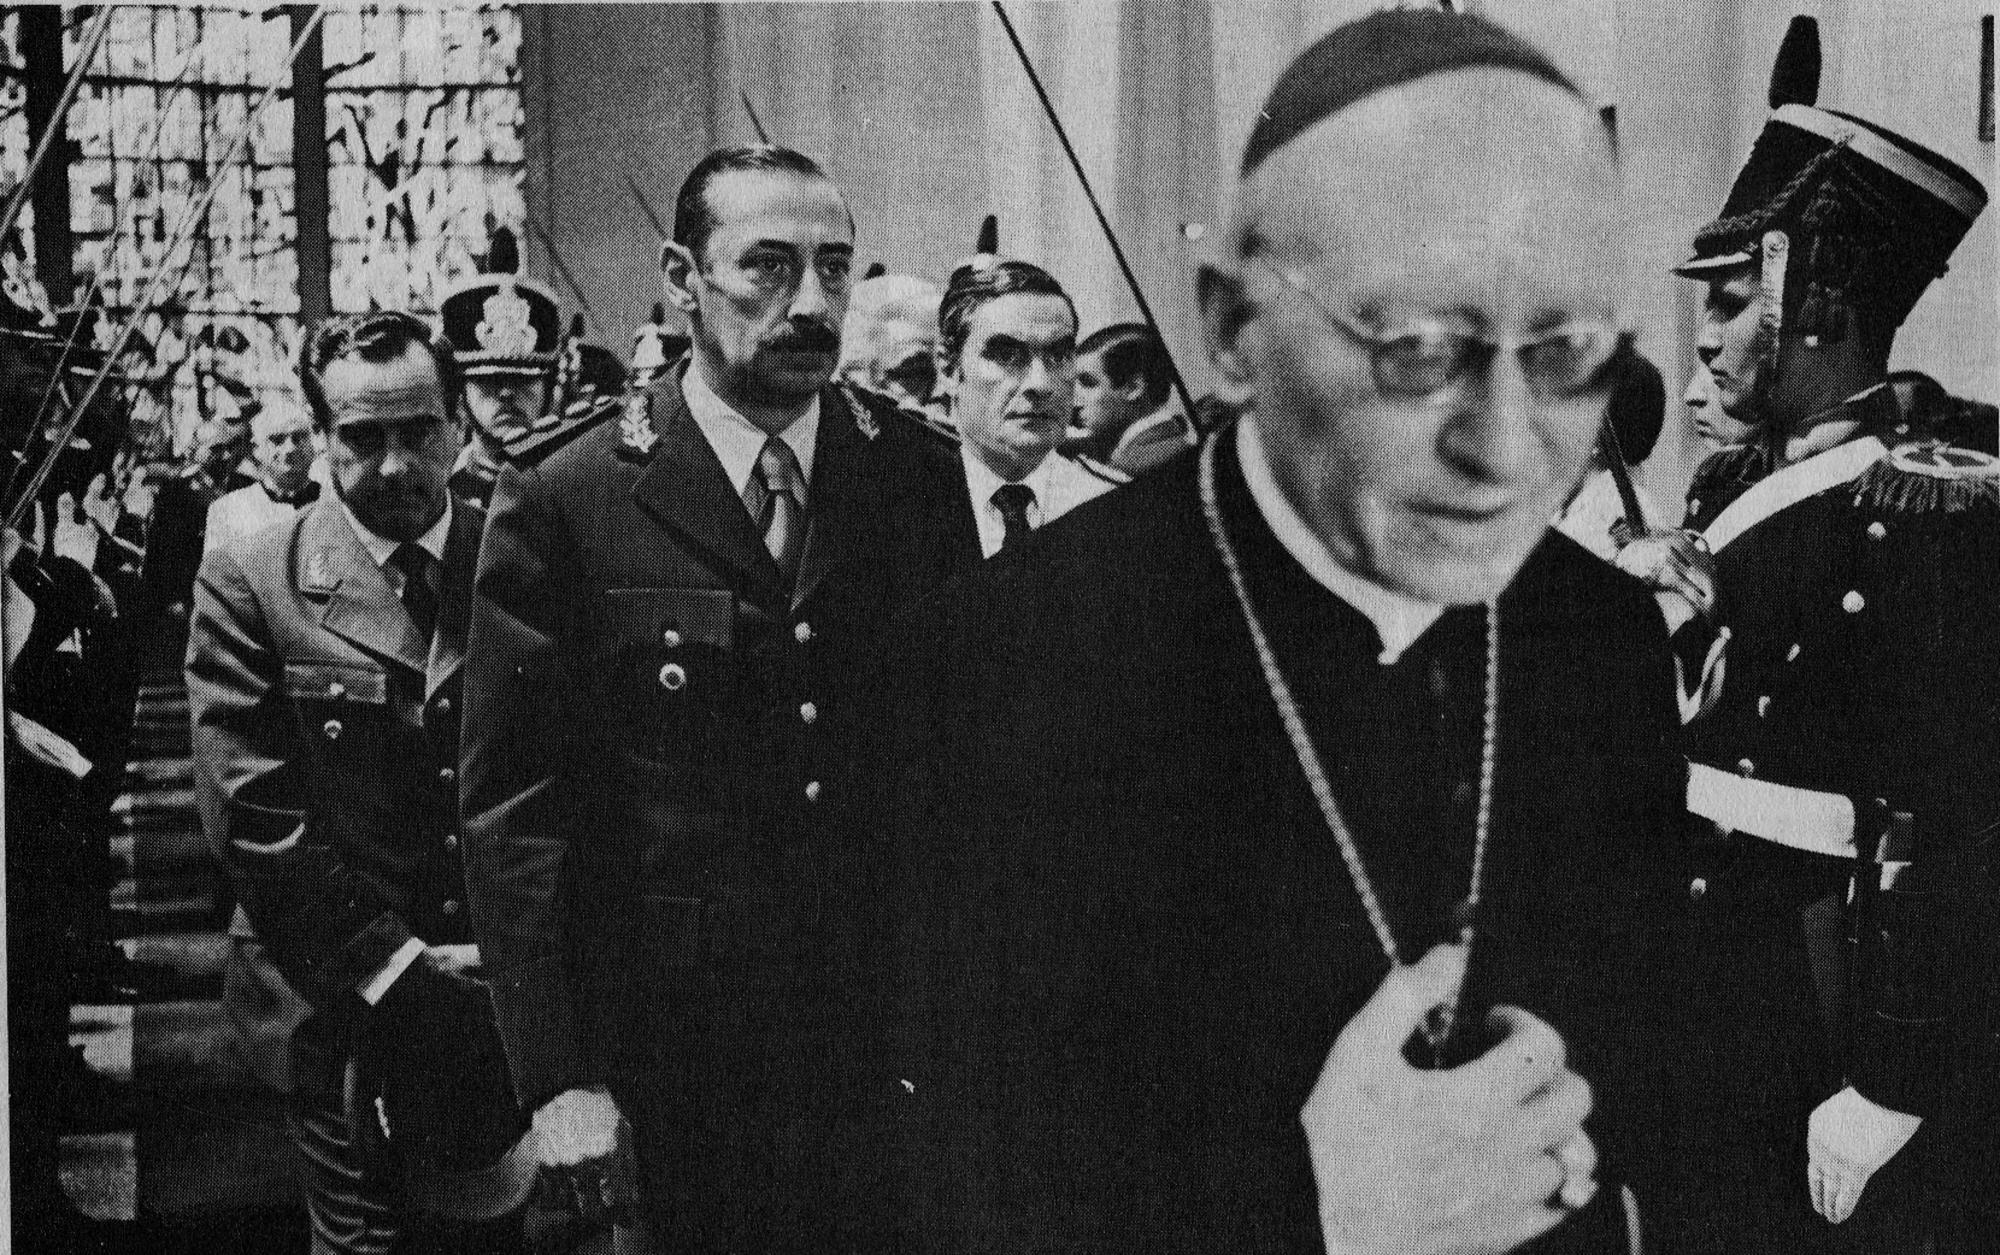 El secreto de la iglesia católica durante la dictadura argentina